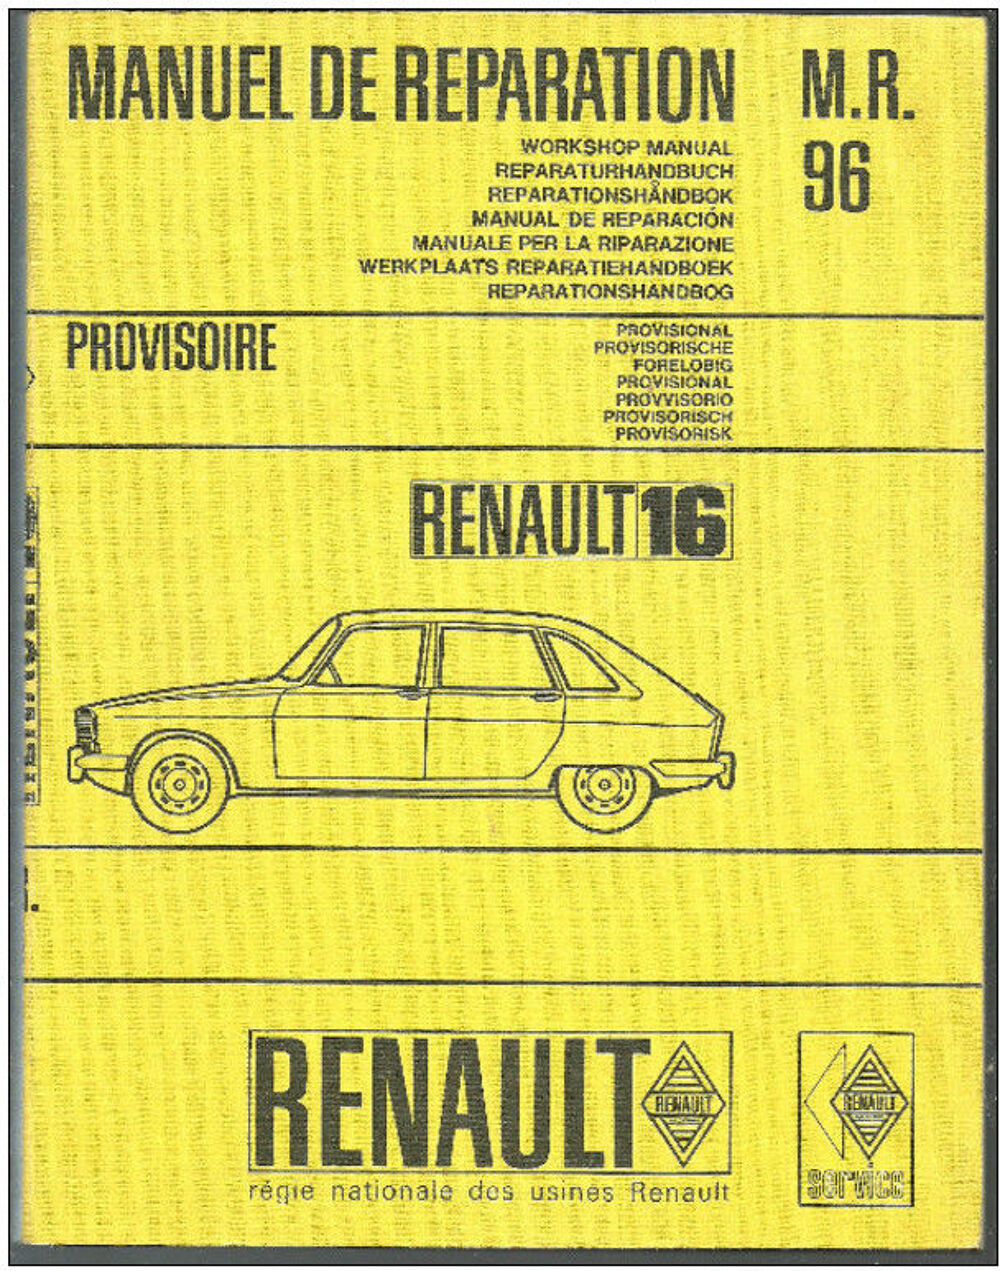 MANUEL DE REPARATION M.R 96 - Ed PROV. - R 1150 - RENAULT 16 Livres et BD